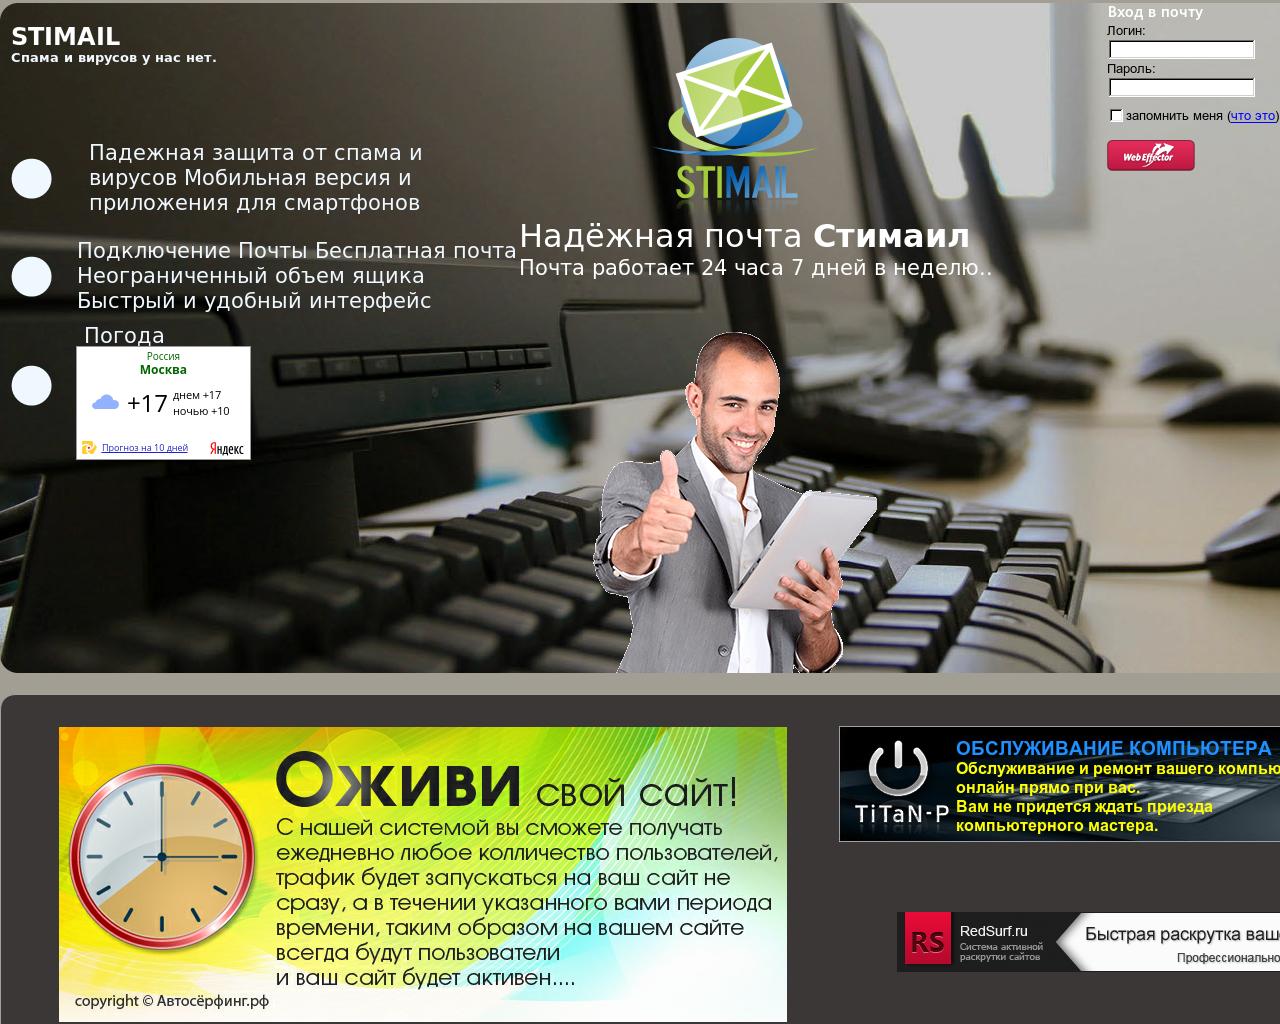 Изображение сайта stimail.ru в разрешении 1280x1024